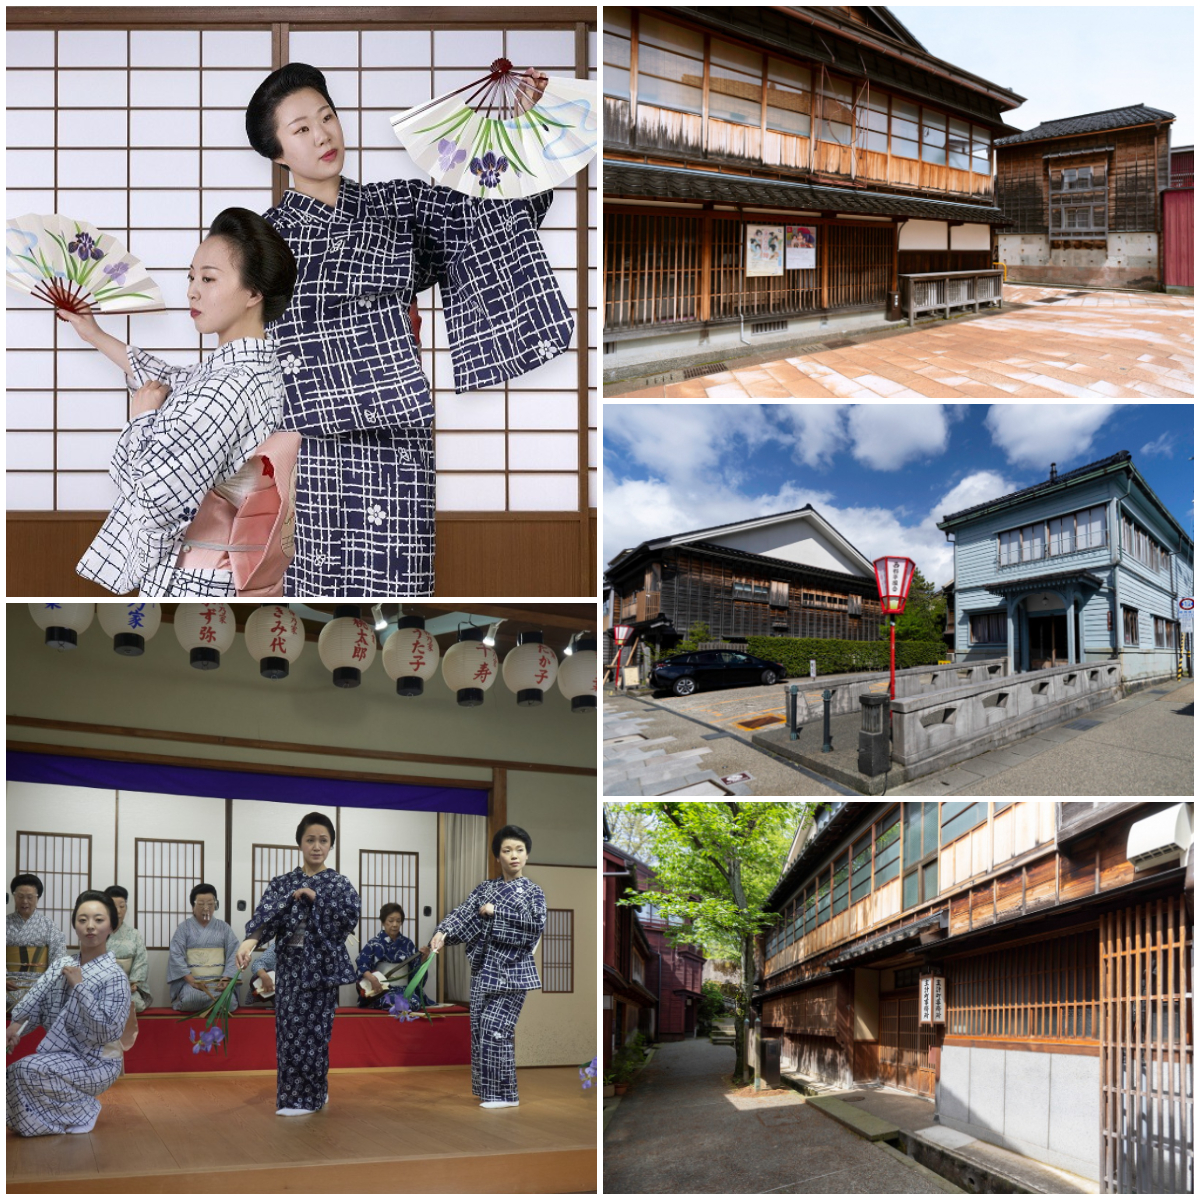 【7/2(土)〜】「金沢芸妓 夏のお稽古風景特別体験会」を今年も実施。